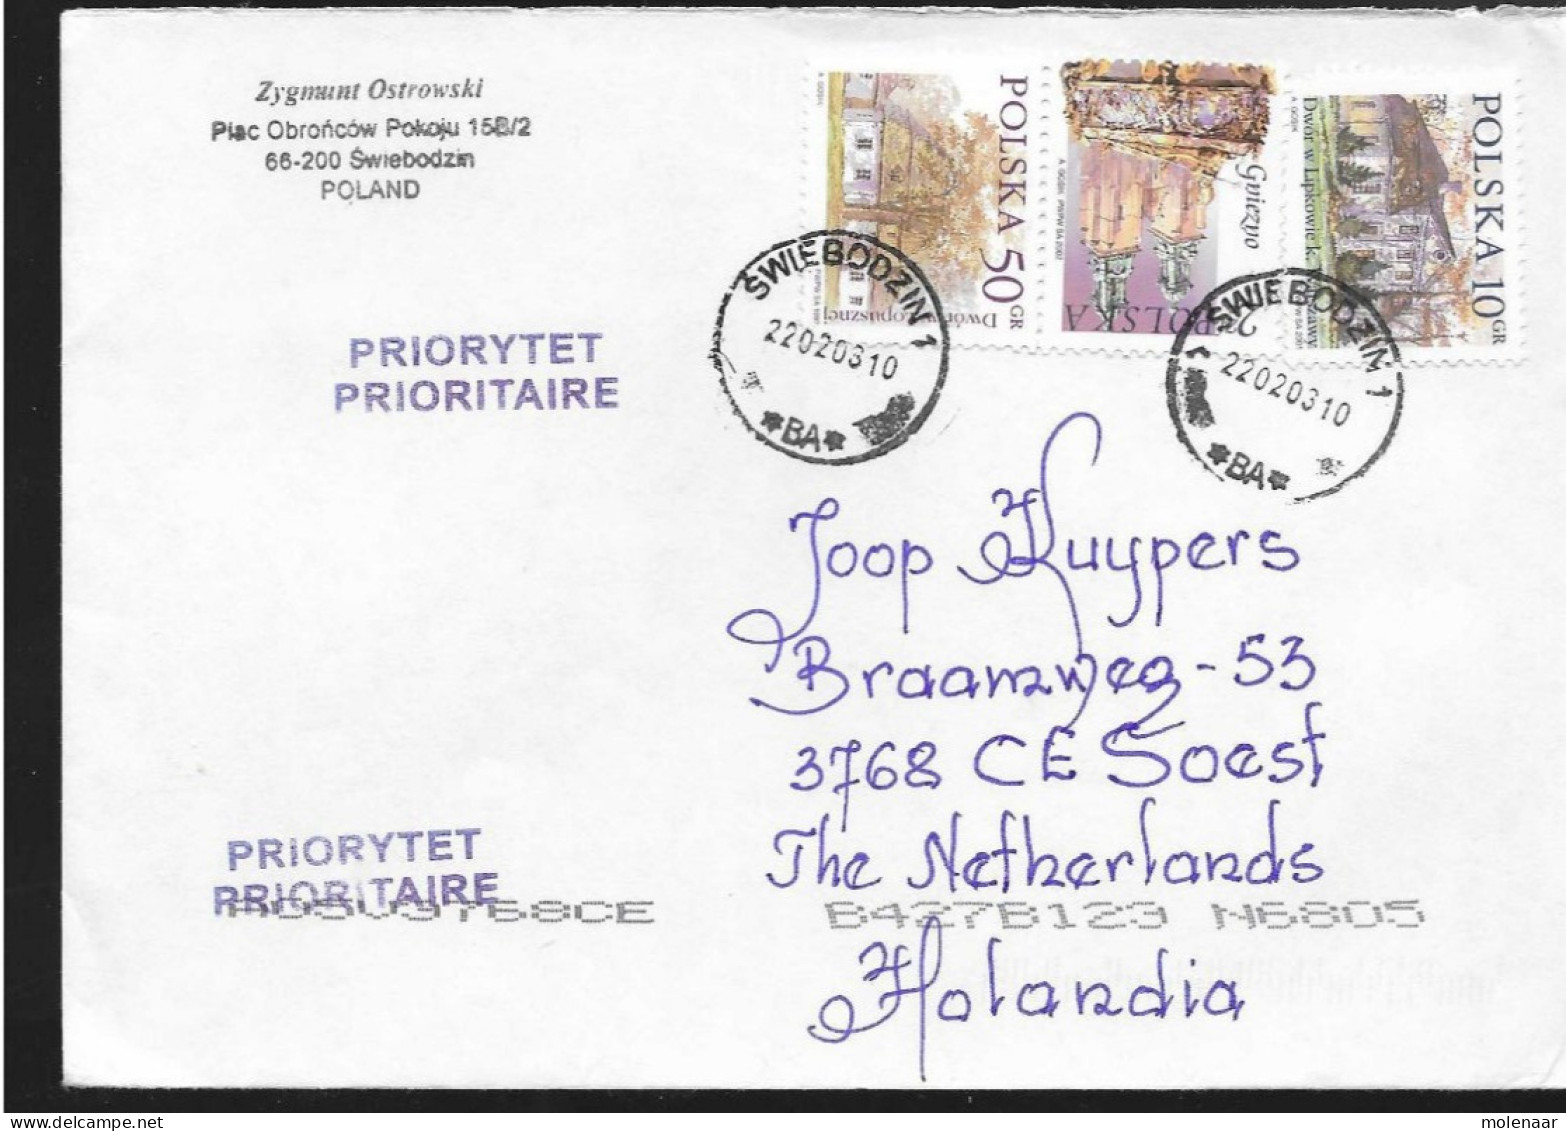 Postzegels > Europa > Polen > 1944-.... Republiek > 2001-10 >brief Ui 2003 Met 3 Postzegels (17119)17118 - Brieven En Documenten